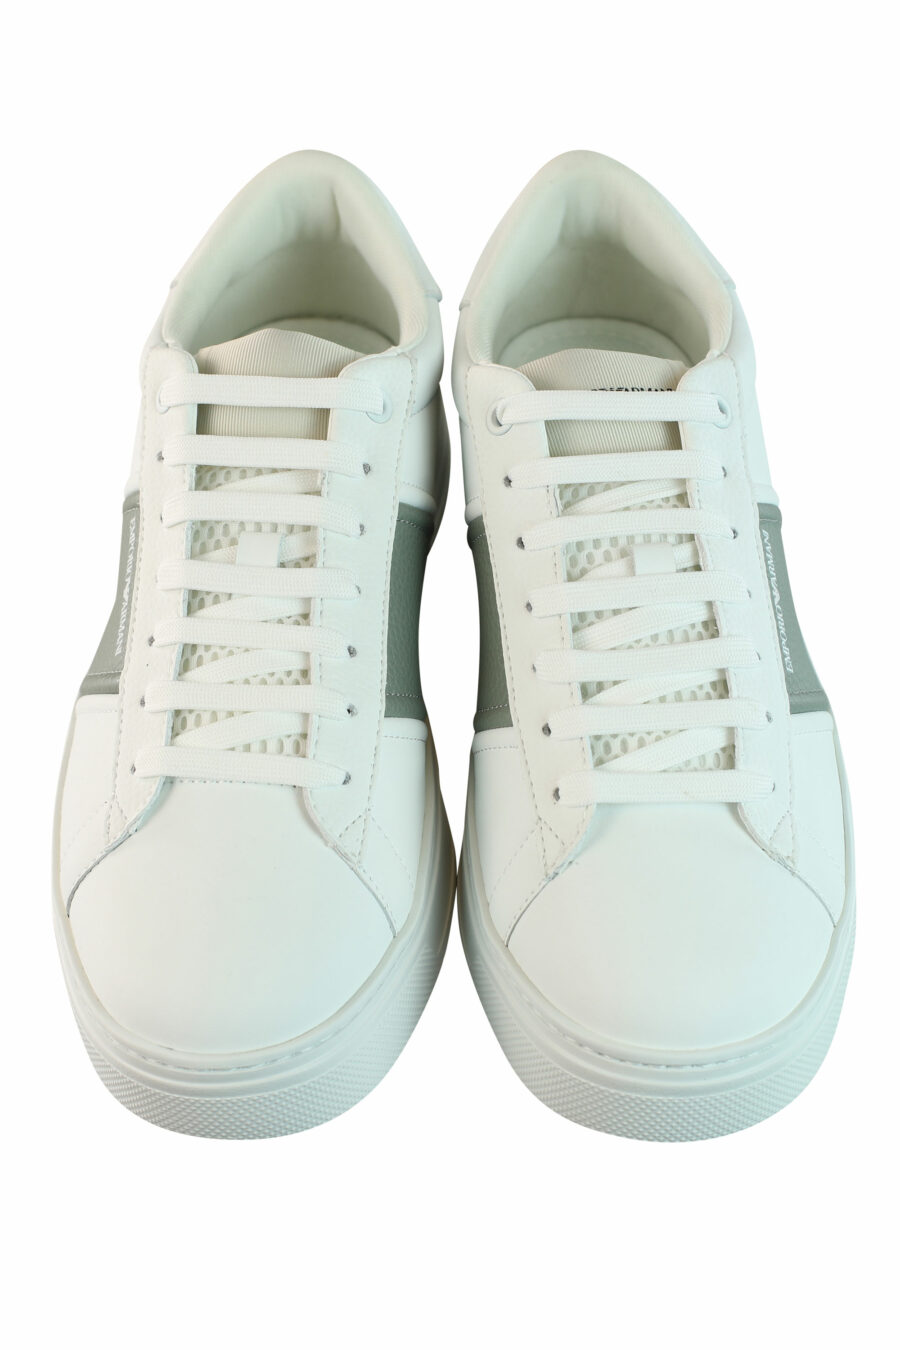 Zapatillas blancas con gris y minilogo - IMG 0890